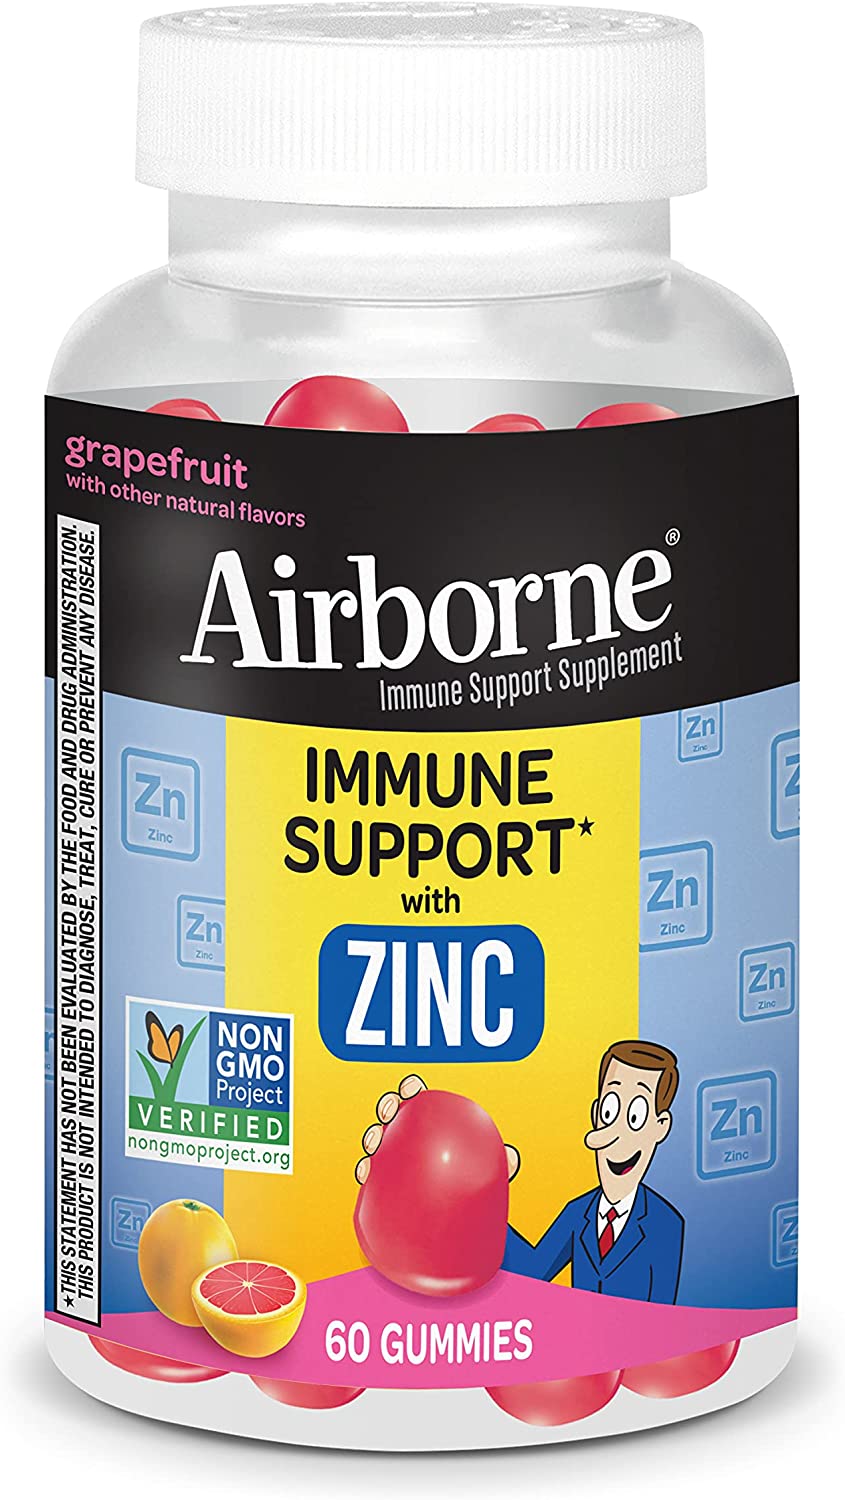 Airborne Zinc Gummies, Chewable Zinc Immune Support Supplement – Non-GMO Project Verified, Gluten & Gelatin Free – 60 Gummies, Grapefruit Flavor